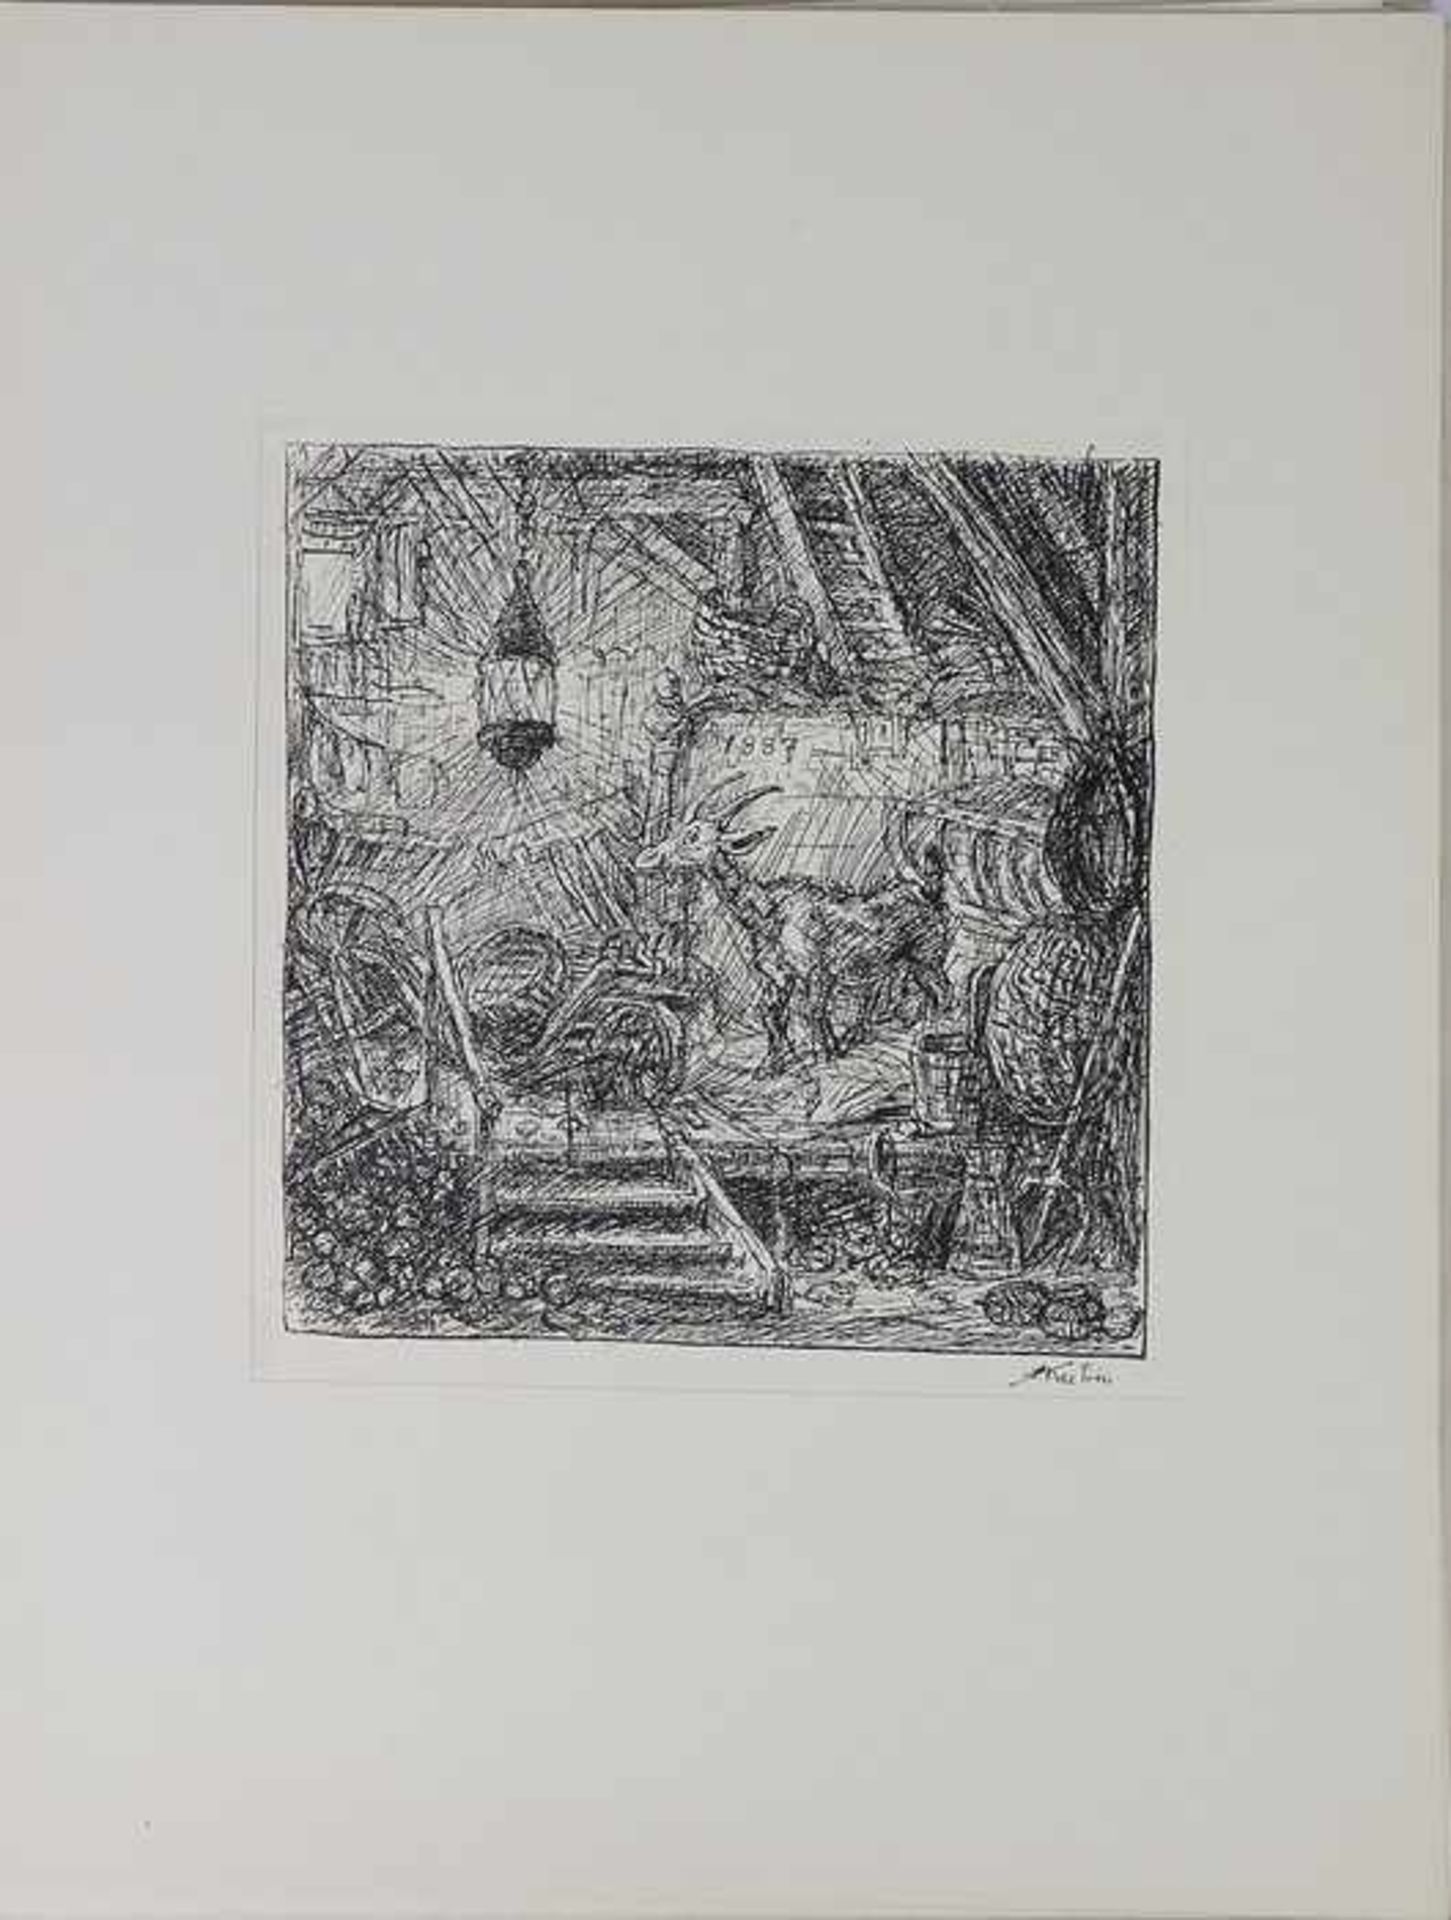 Kubin, Alfred"Am Rande des Lebens", Mappe m. 20 Lichtdrucken n. Federzeichnungen, München R. Piper & - Bild 6 aus 8